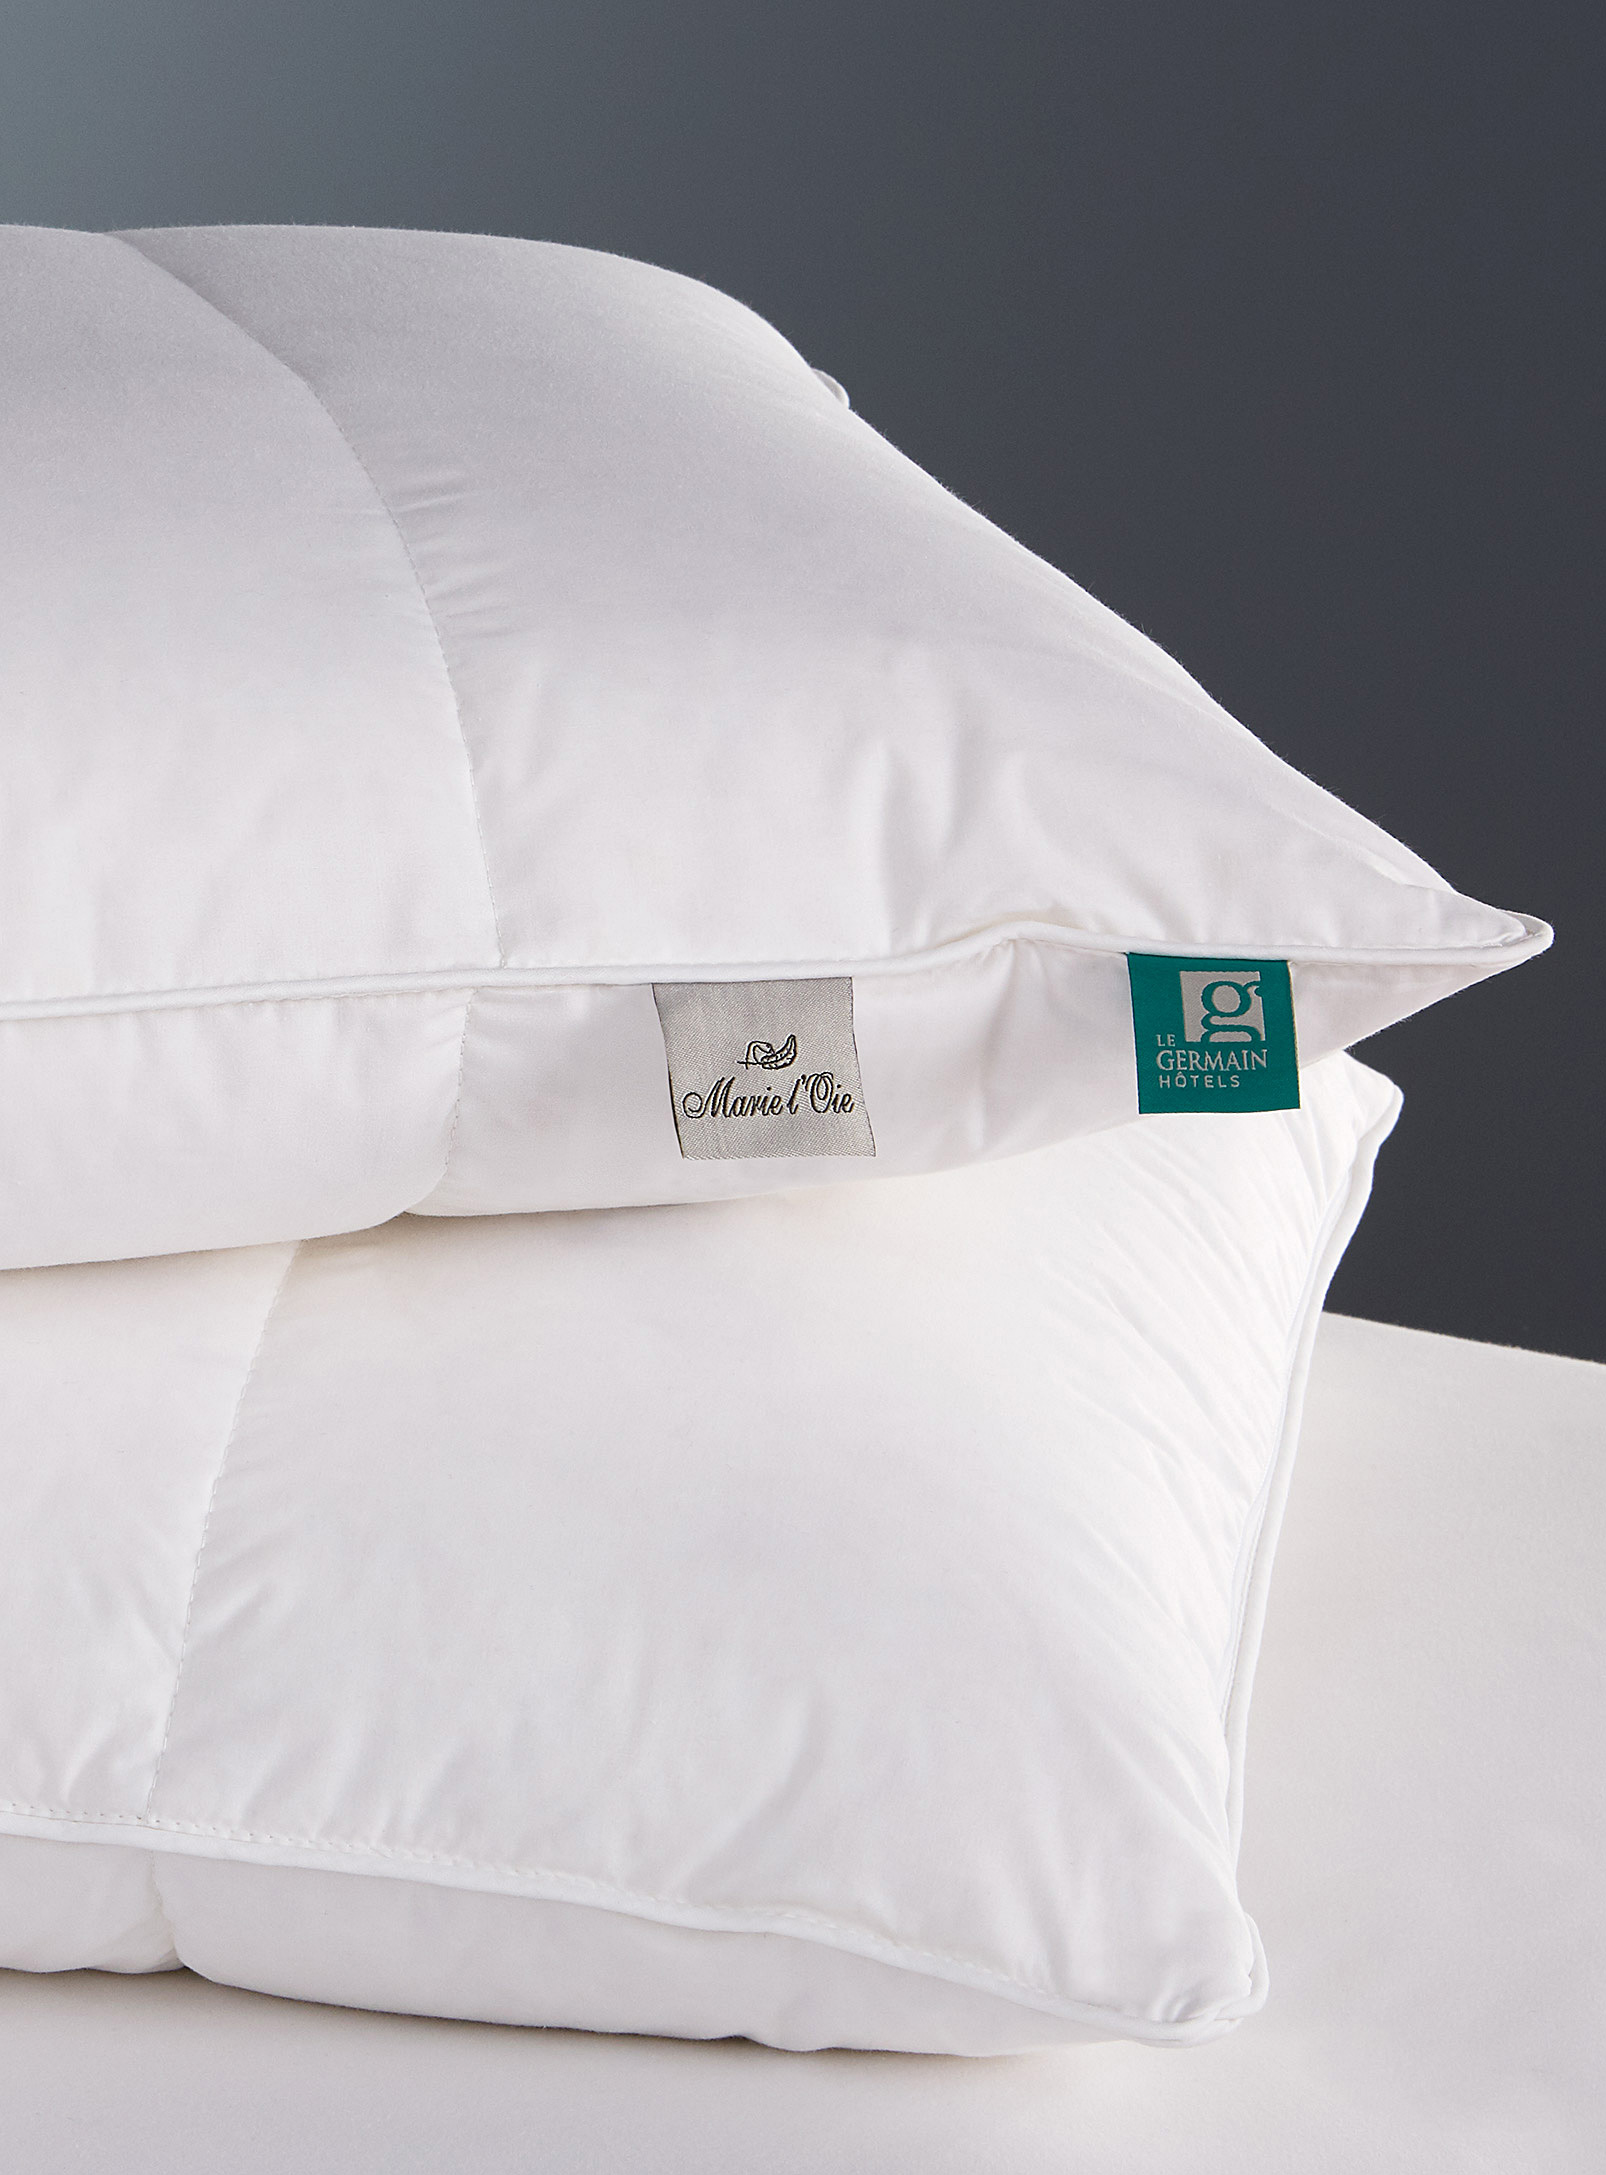 Hôtels Le Germain - Royal Plus pillow Firm support